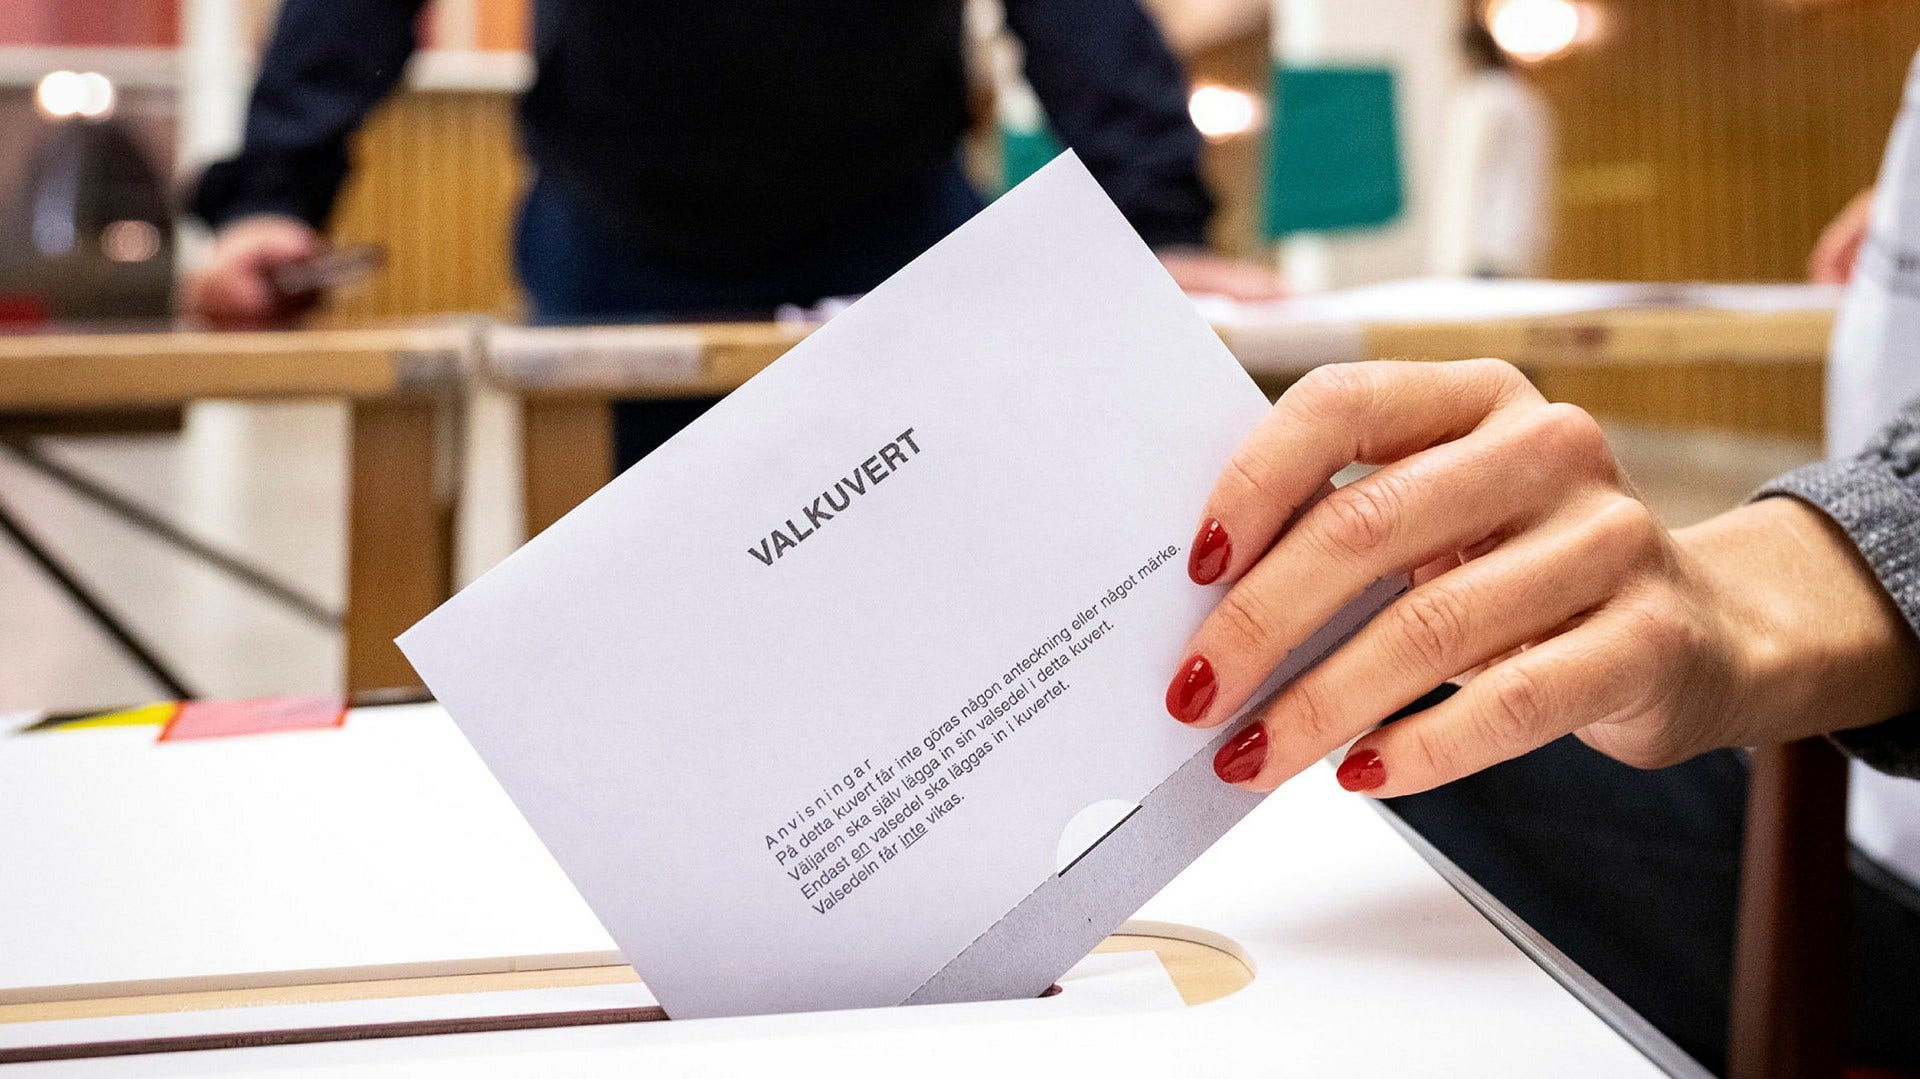 Valkuvert läggs i vallokalen i Rådhuset i Malmö i söndags. I kuvertet borde också en eventuell blankröst räknas i stället för att räknas som ogiltig, anser insändarskribenten.